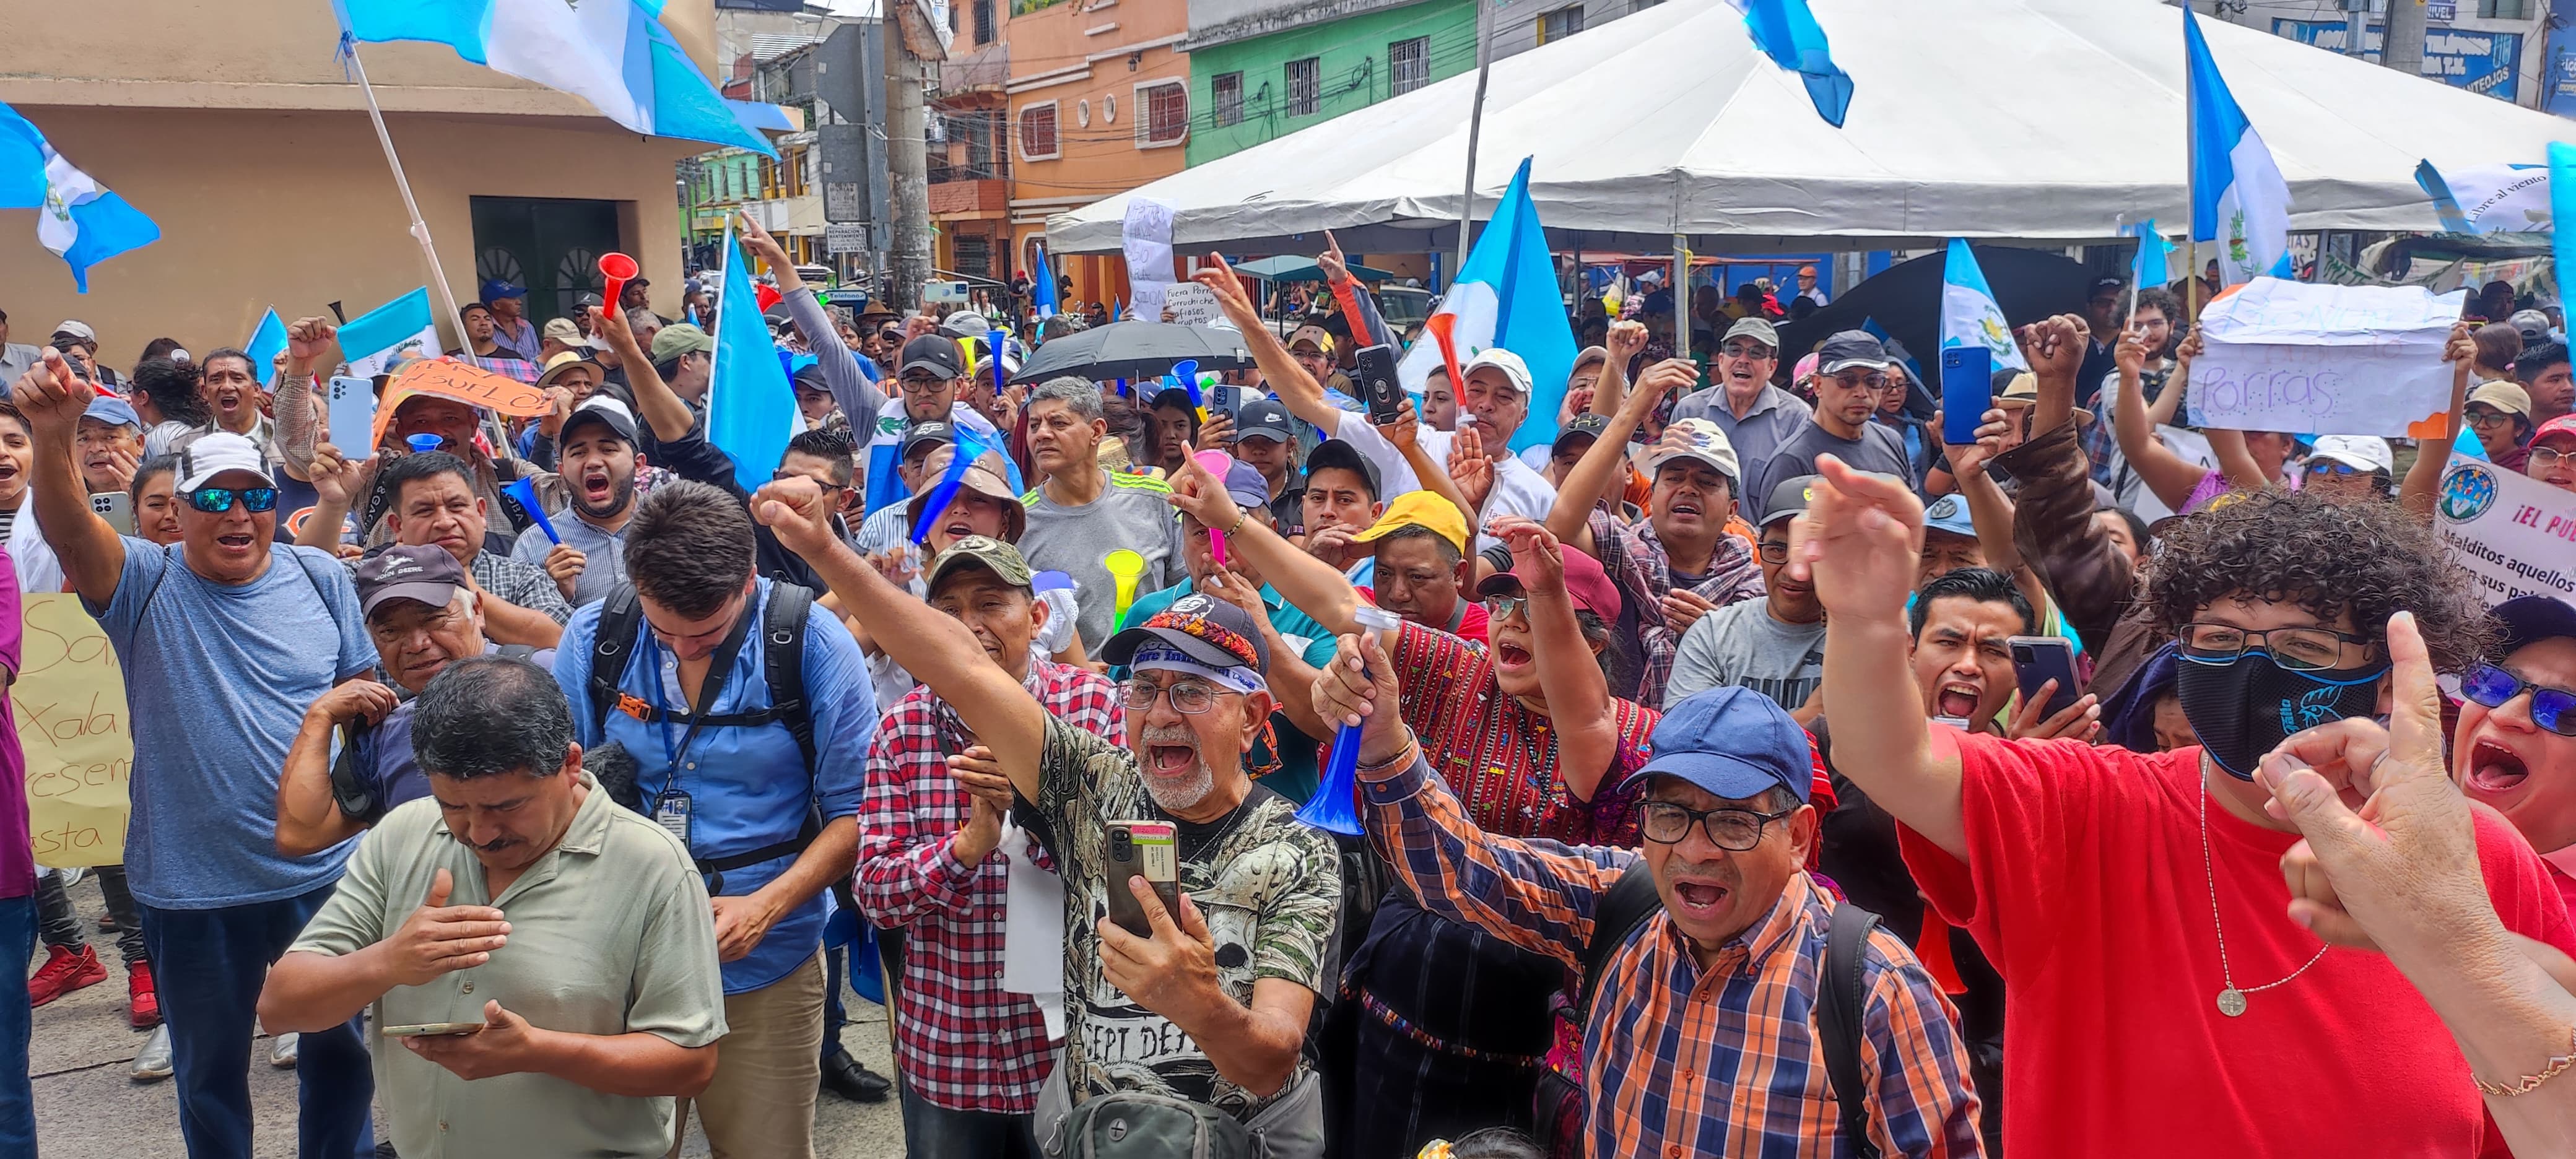 Cientos de personas se han apostado afuera de la sede central del Ministerio Público en el barrio Gerona, zona 1 de la Ciudad de Guatemala. Exigen la renuncia de la fiscal general, Consuelo Porras. (Foto Prensa Libre: Byron Rivera).